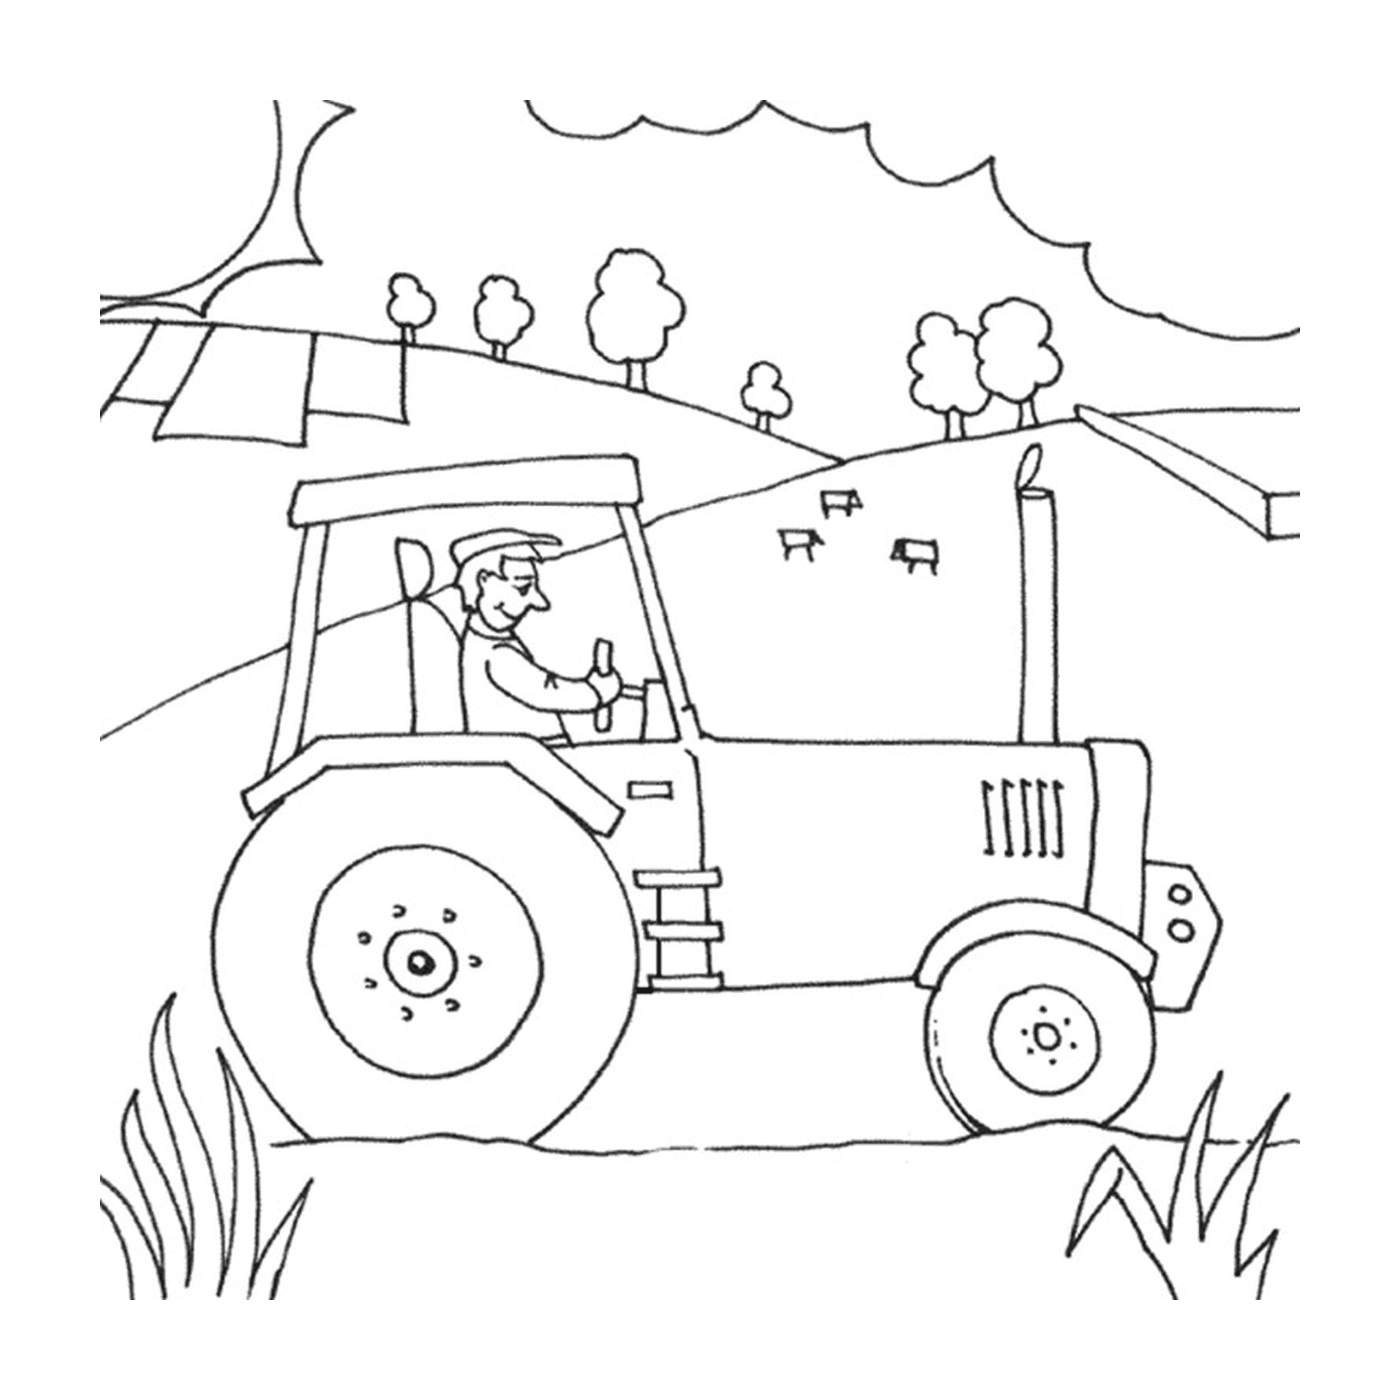  Granja con tractor, vida rural activa 